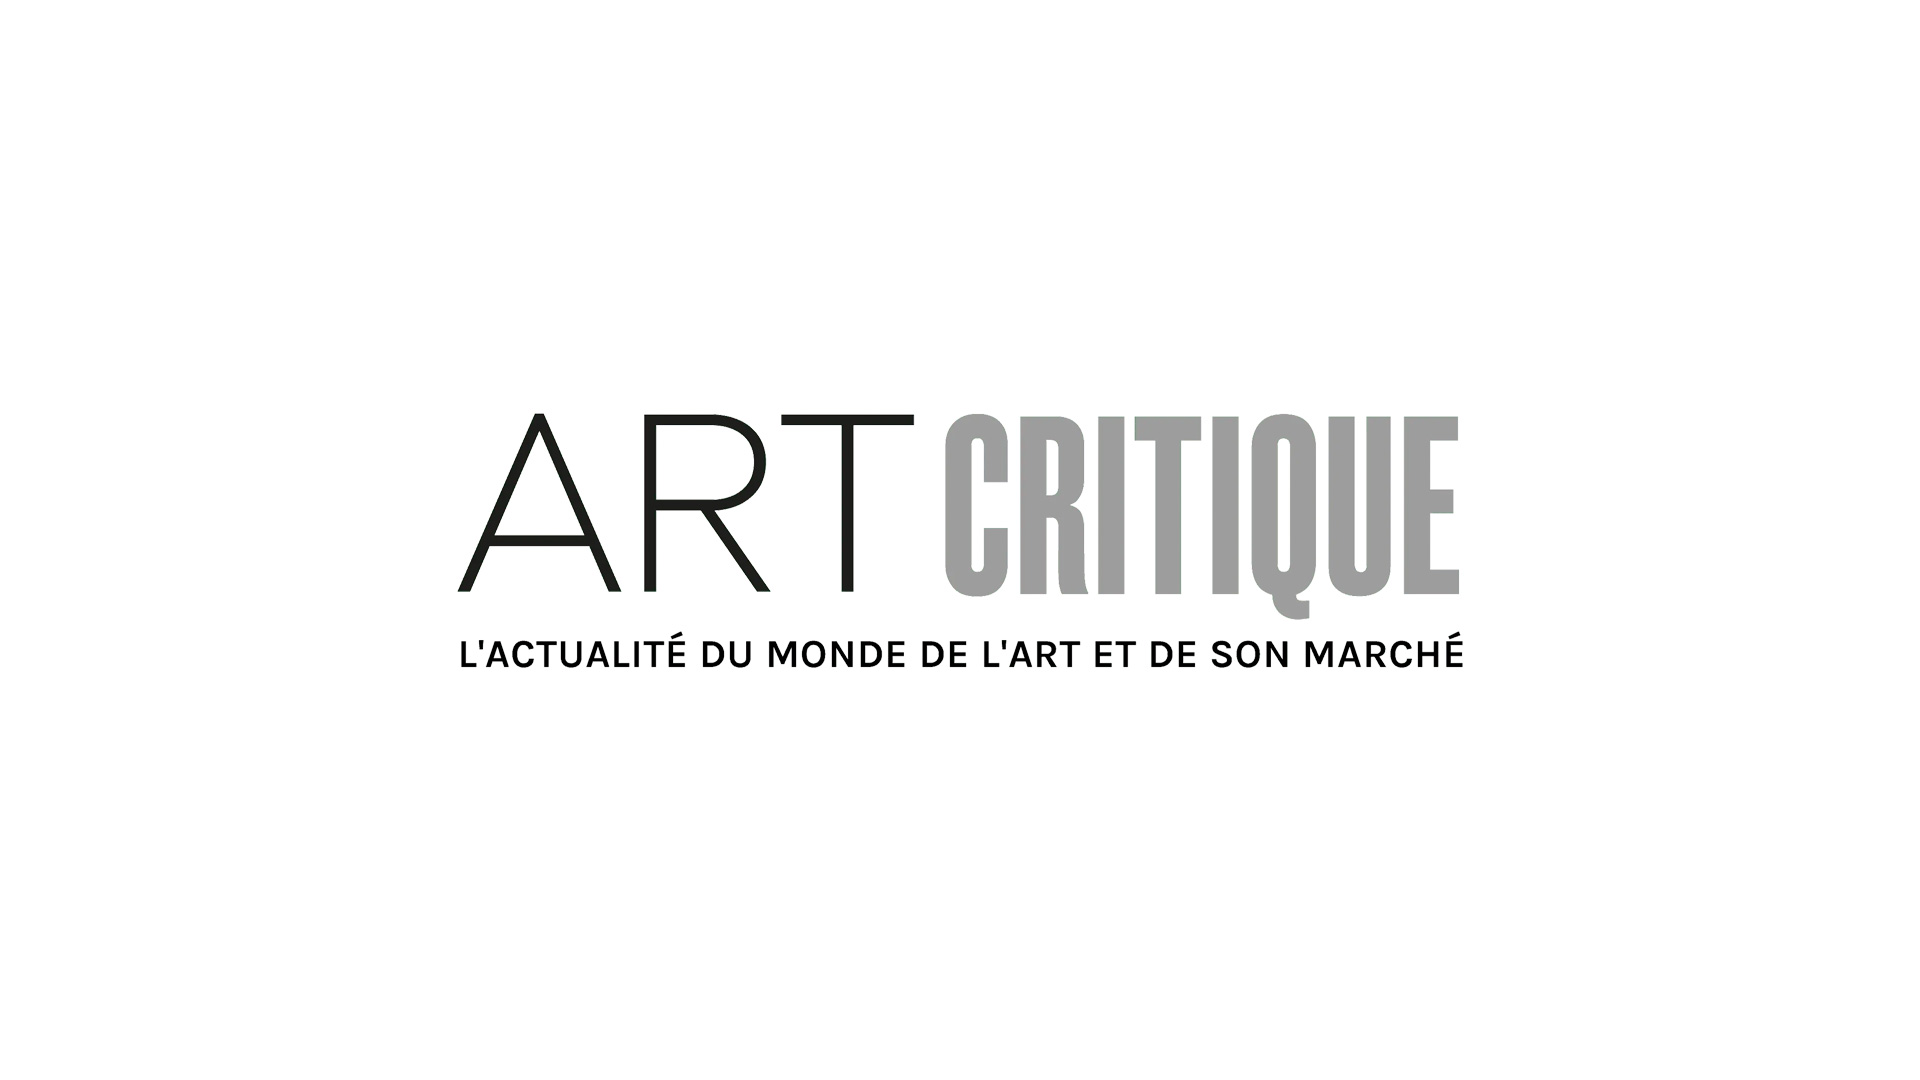 Les artistes algériens se lancent dans les NFT